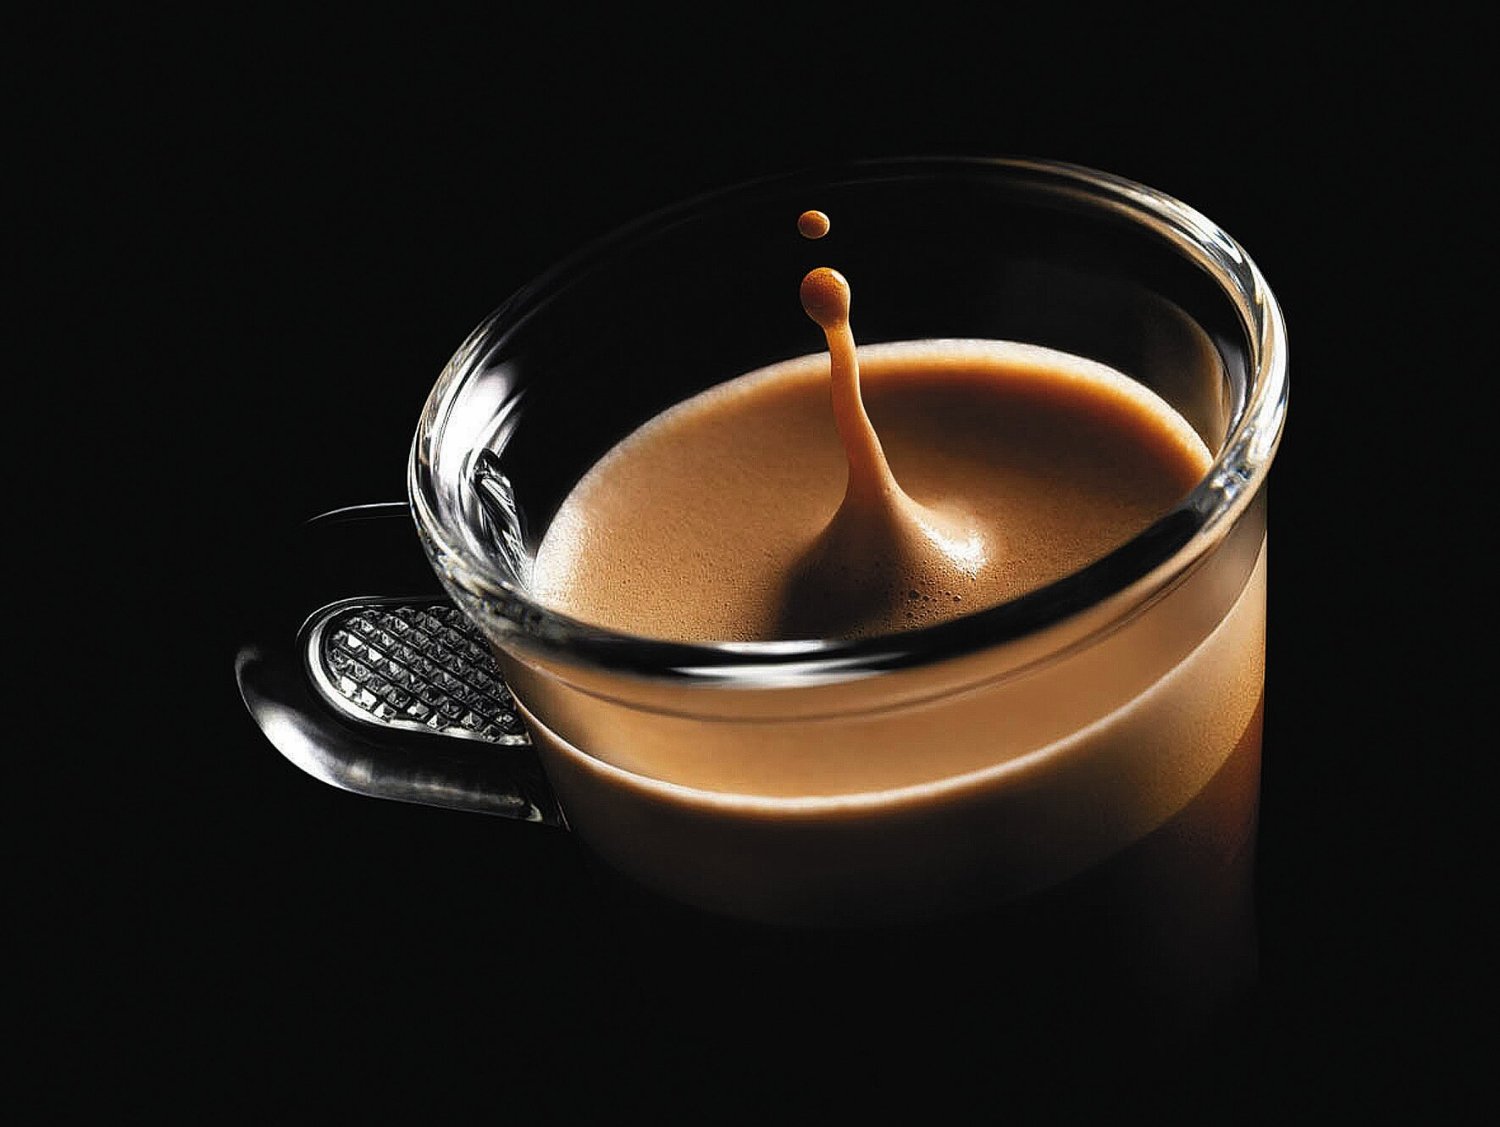 Nespresso-Kaffee - eine Charaktersache?